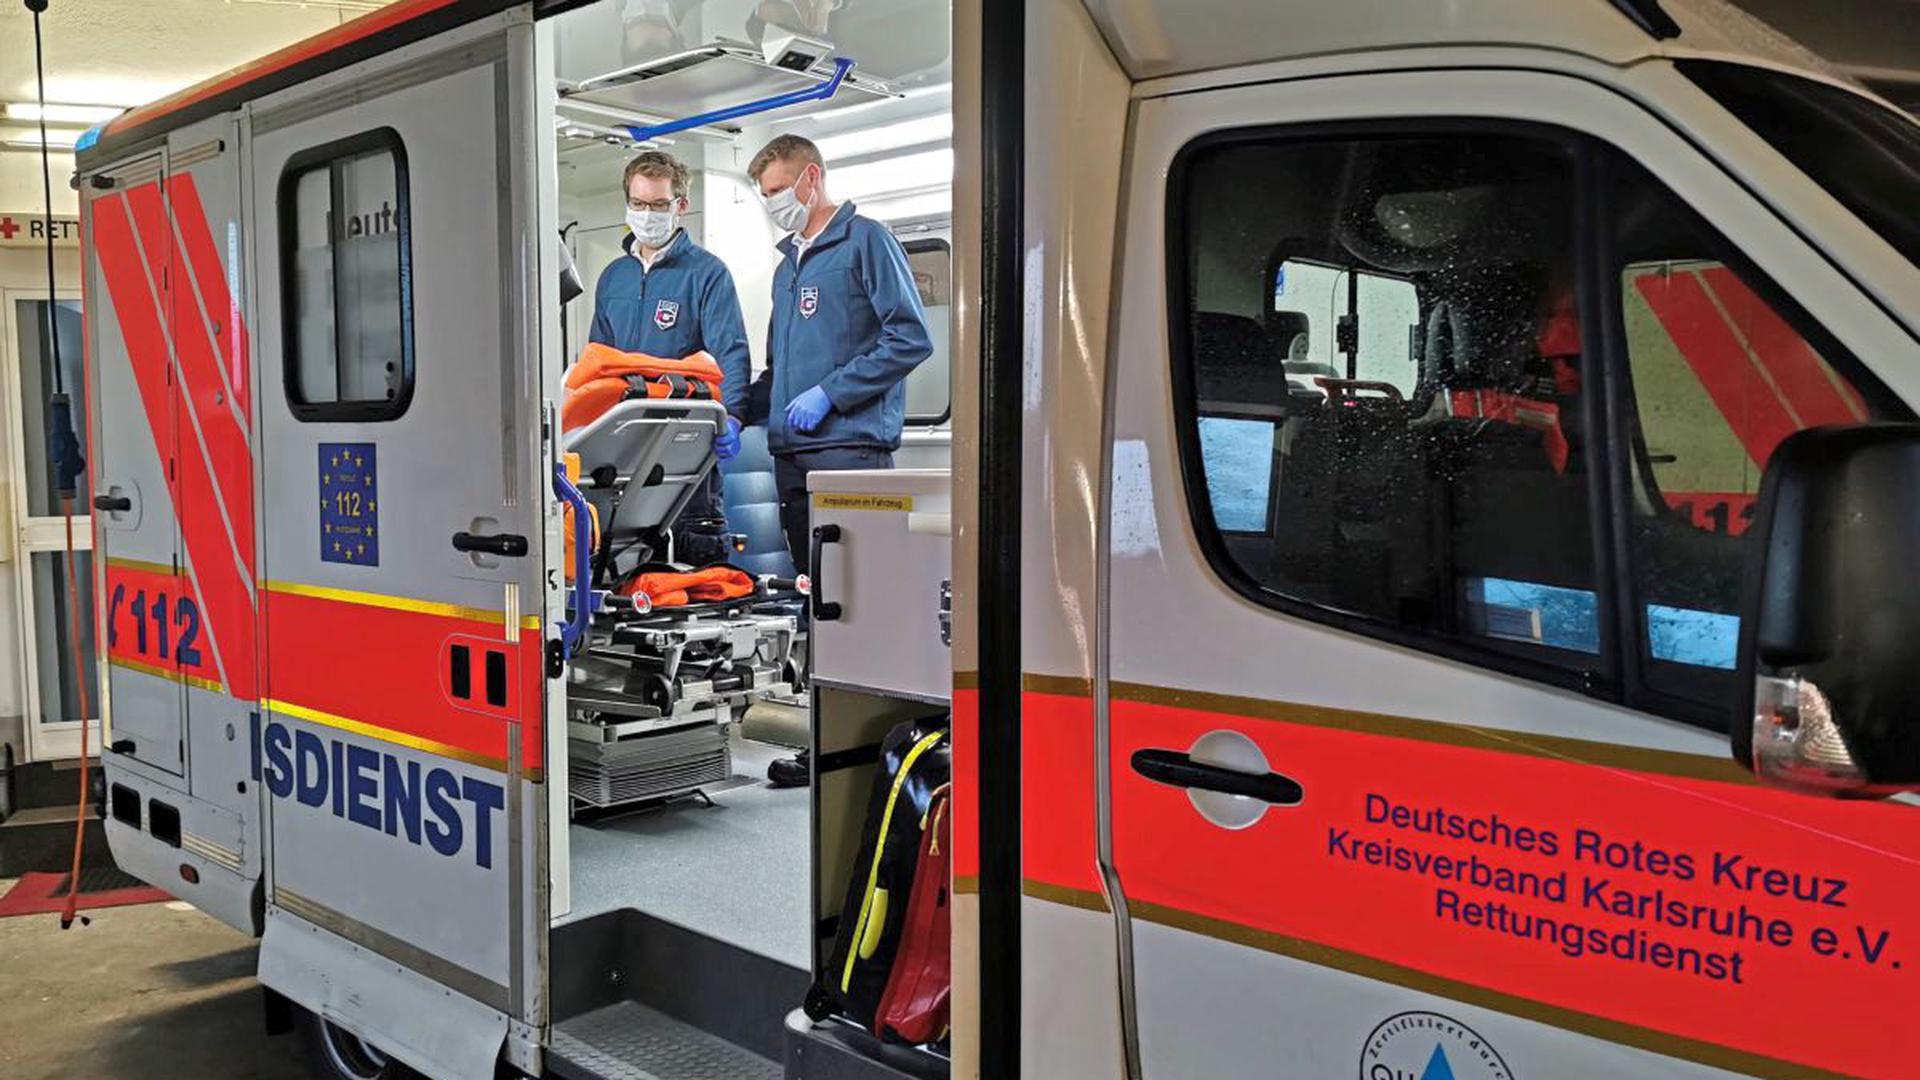 Vorbereitung bei den Rettungskräften: Das Deutsche Rote Kreuz im Kreisverband Karlsruhe hat seine 30 Fahrzeuge seit Wochen bereits ausgestattet mit Schutzkleidung sowie mit Mund-Nasen-Schutzmasken der höchsten Sicherheitsklasse.